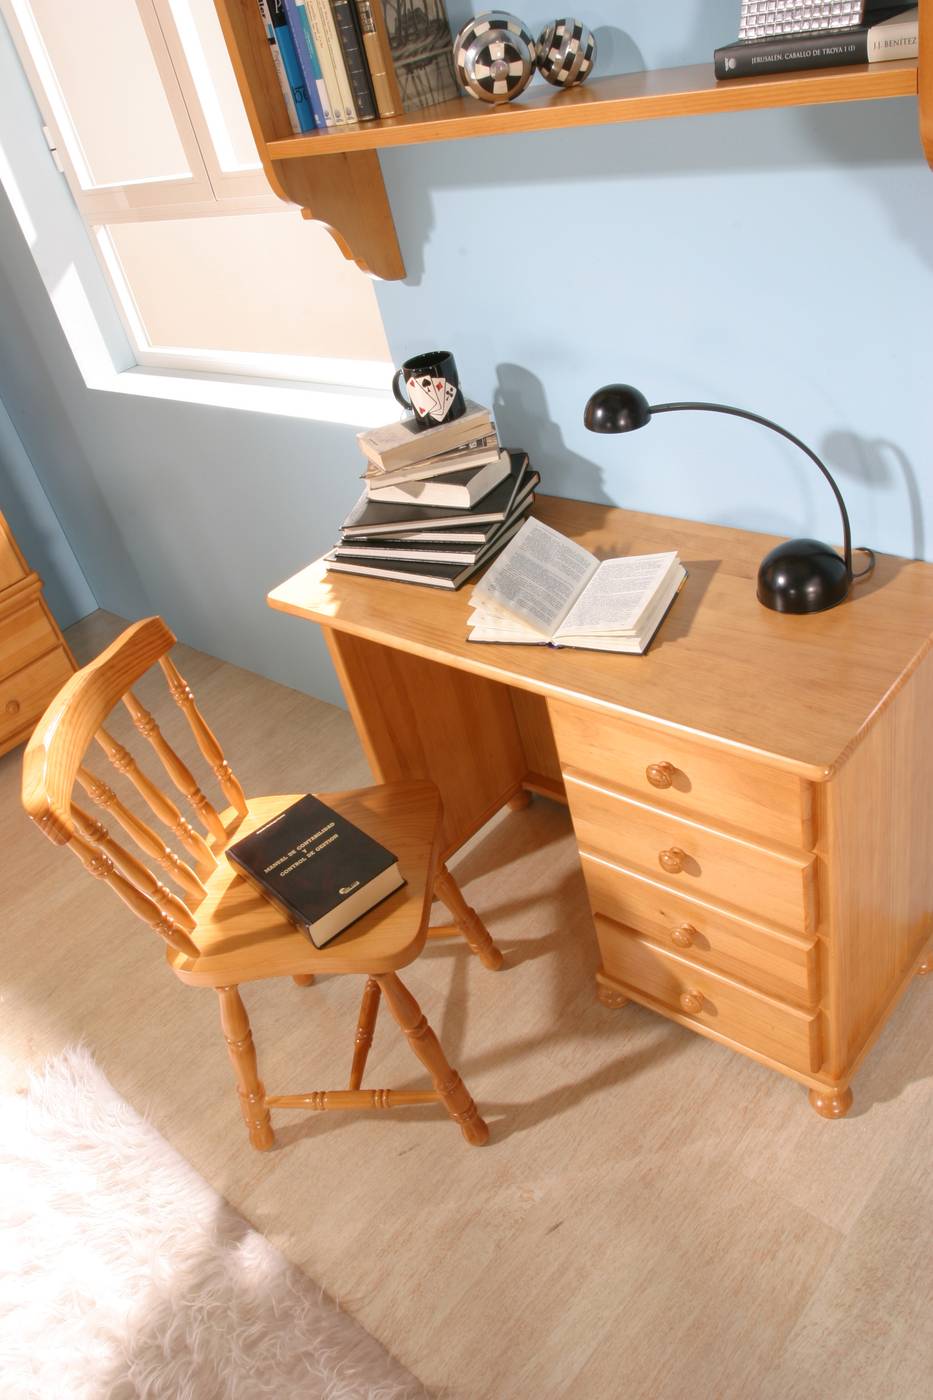 Pata Escritorio Carole - Pata rinconera de escritorio de madera maciza. Disponible en una amplia variedad de colores.